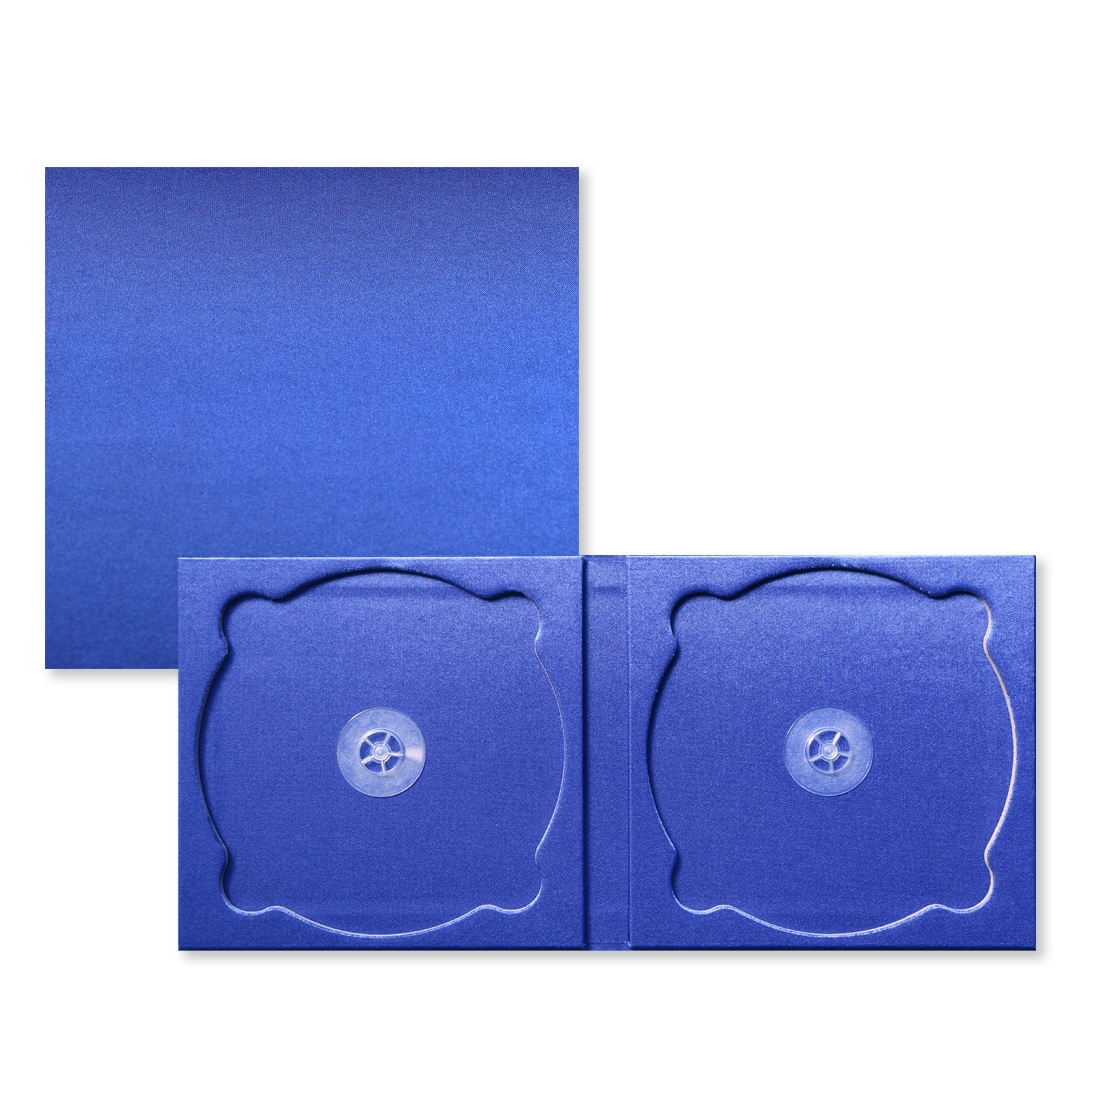 CDケース,discami,サテン,青色,2枚収納